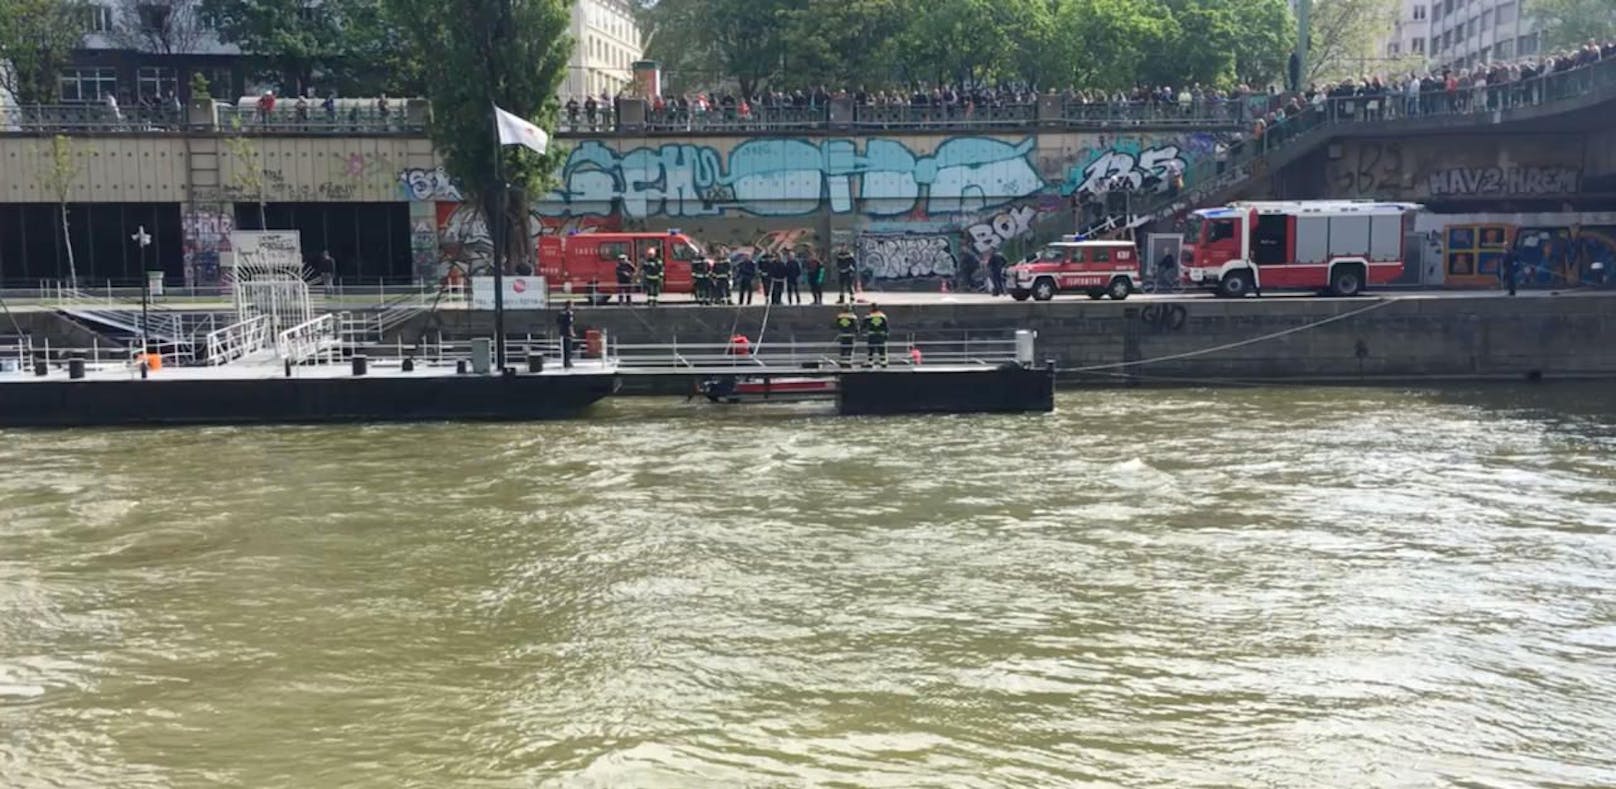 Leiche aus Donaukanal geborgen: Polizei ermittelt